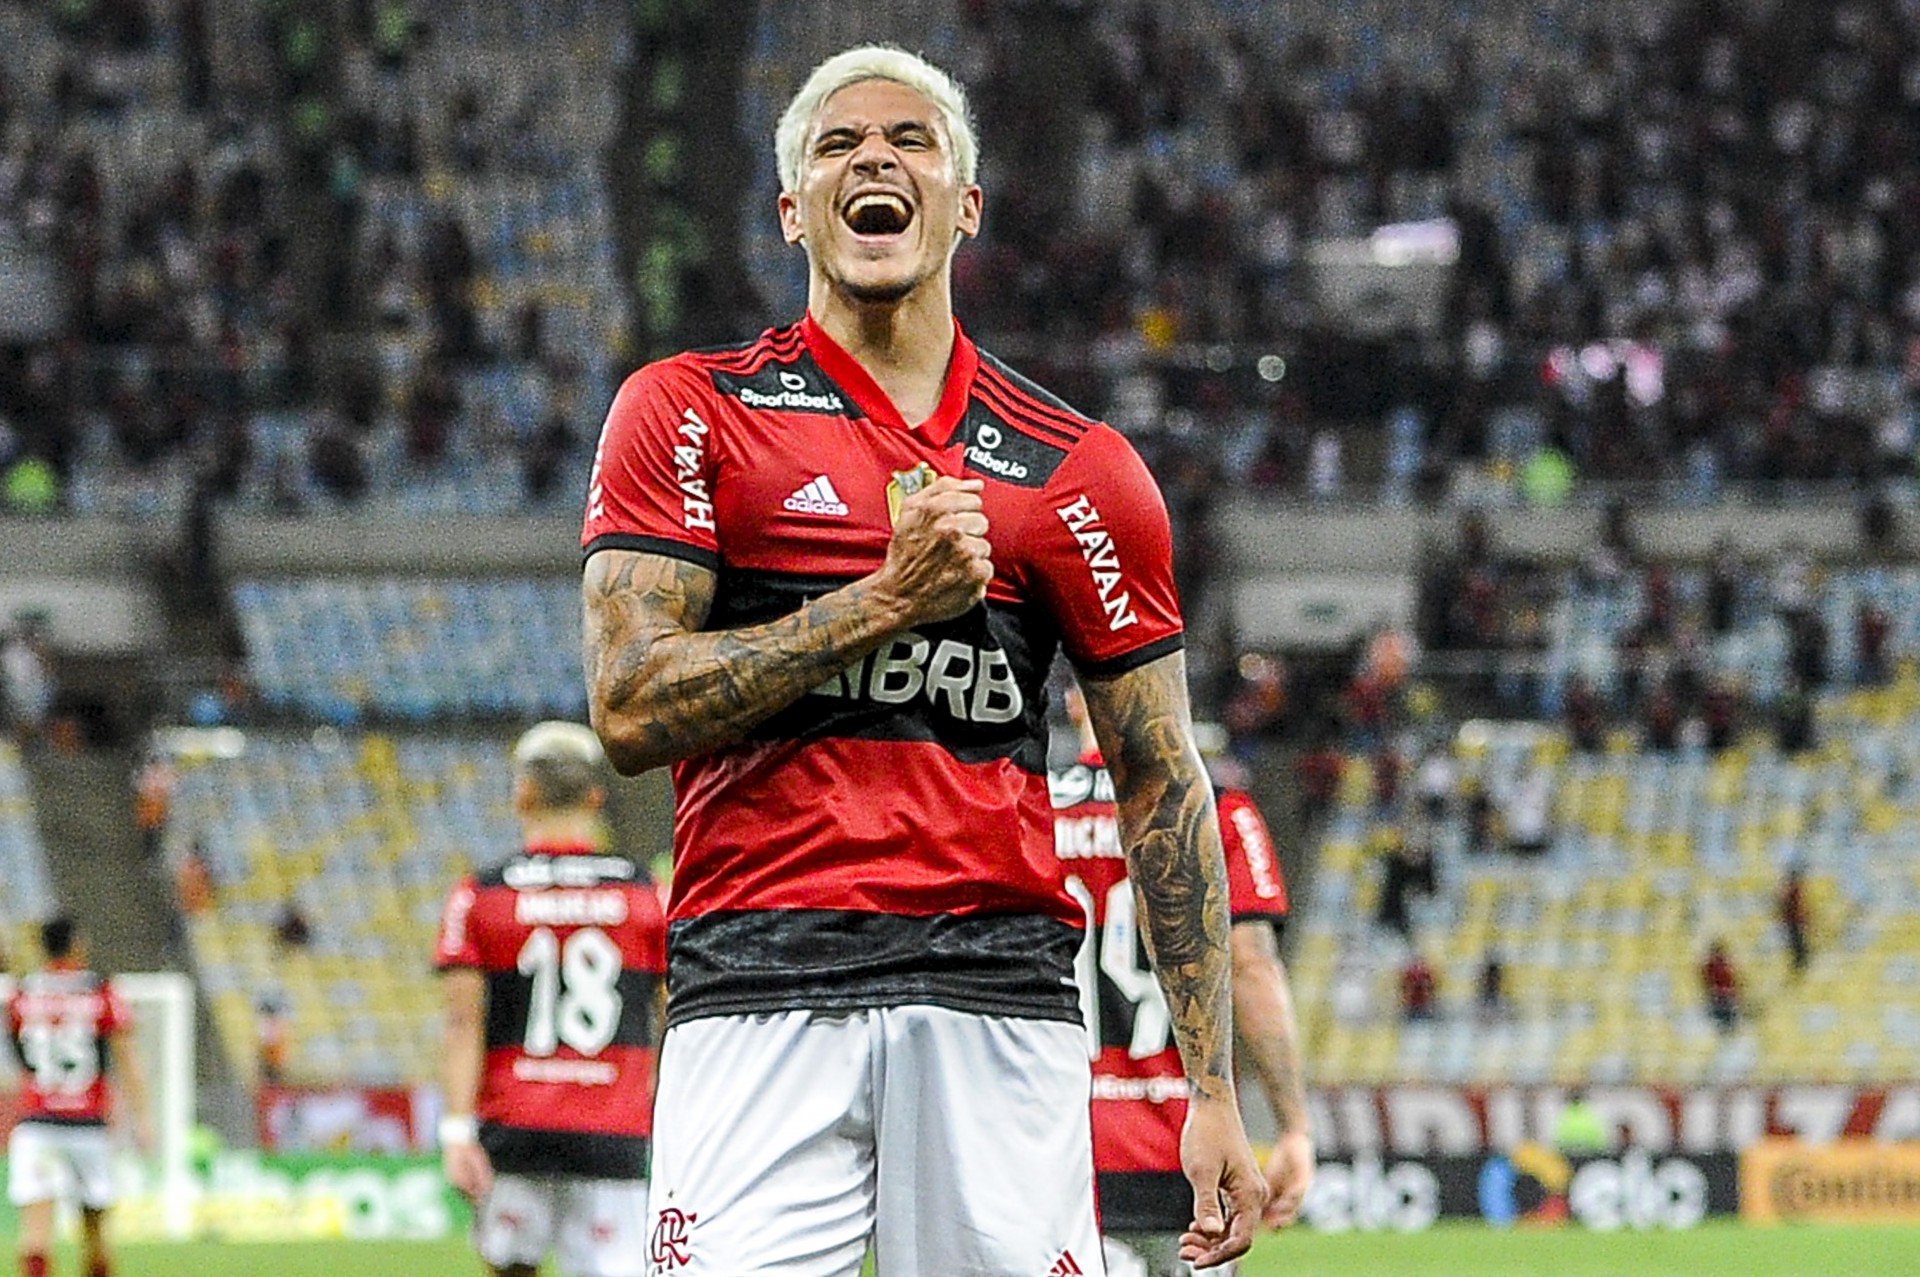 Pedro - Idade: 24 anos - Posição: Atacante - Clube Atual: Flamengo - Valor: 16 milhões de euros (104 milhões de reais). - Marcelo Cortes / Flamengo